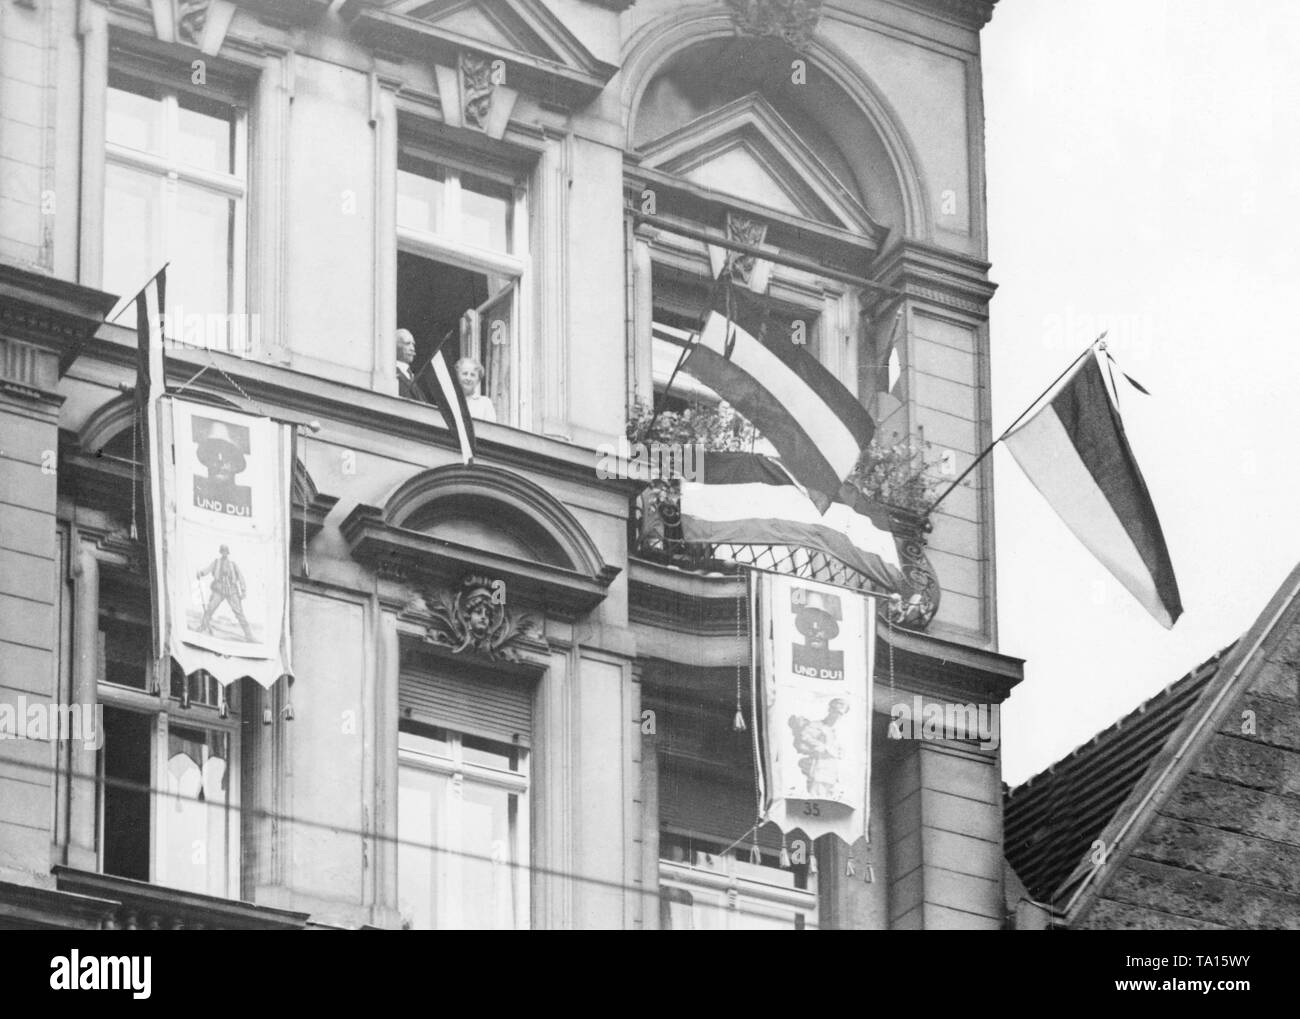 Diese Berliner sind offenbar begeistert von der Stahlhelm, wie sie die Fahnen der Empire aus dem Fenster und Plakate der Stahlhelm auf Ihrer Fassade hängen. Stockfoto